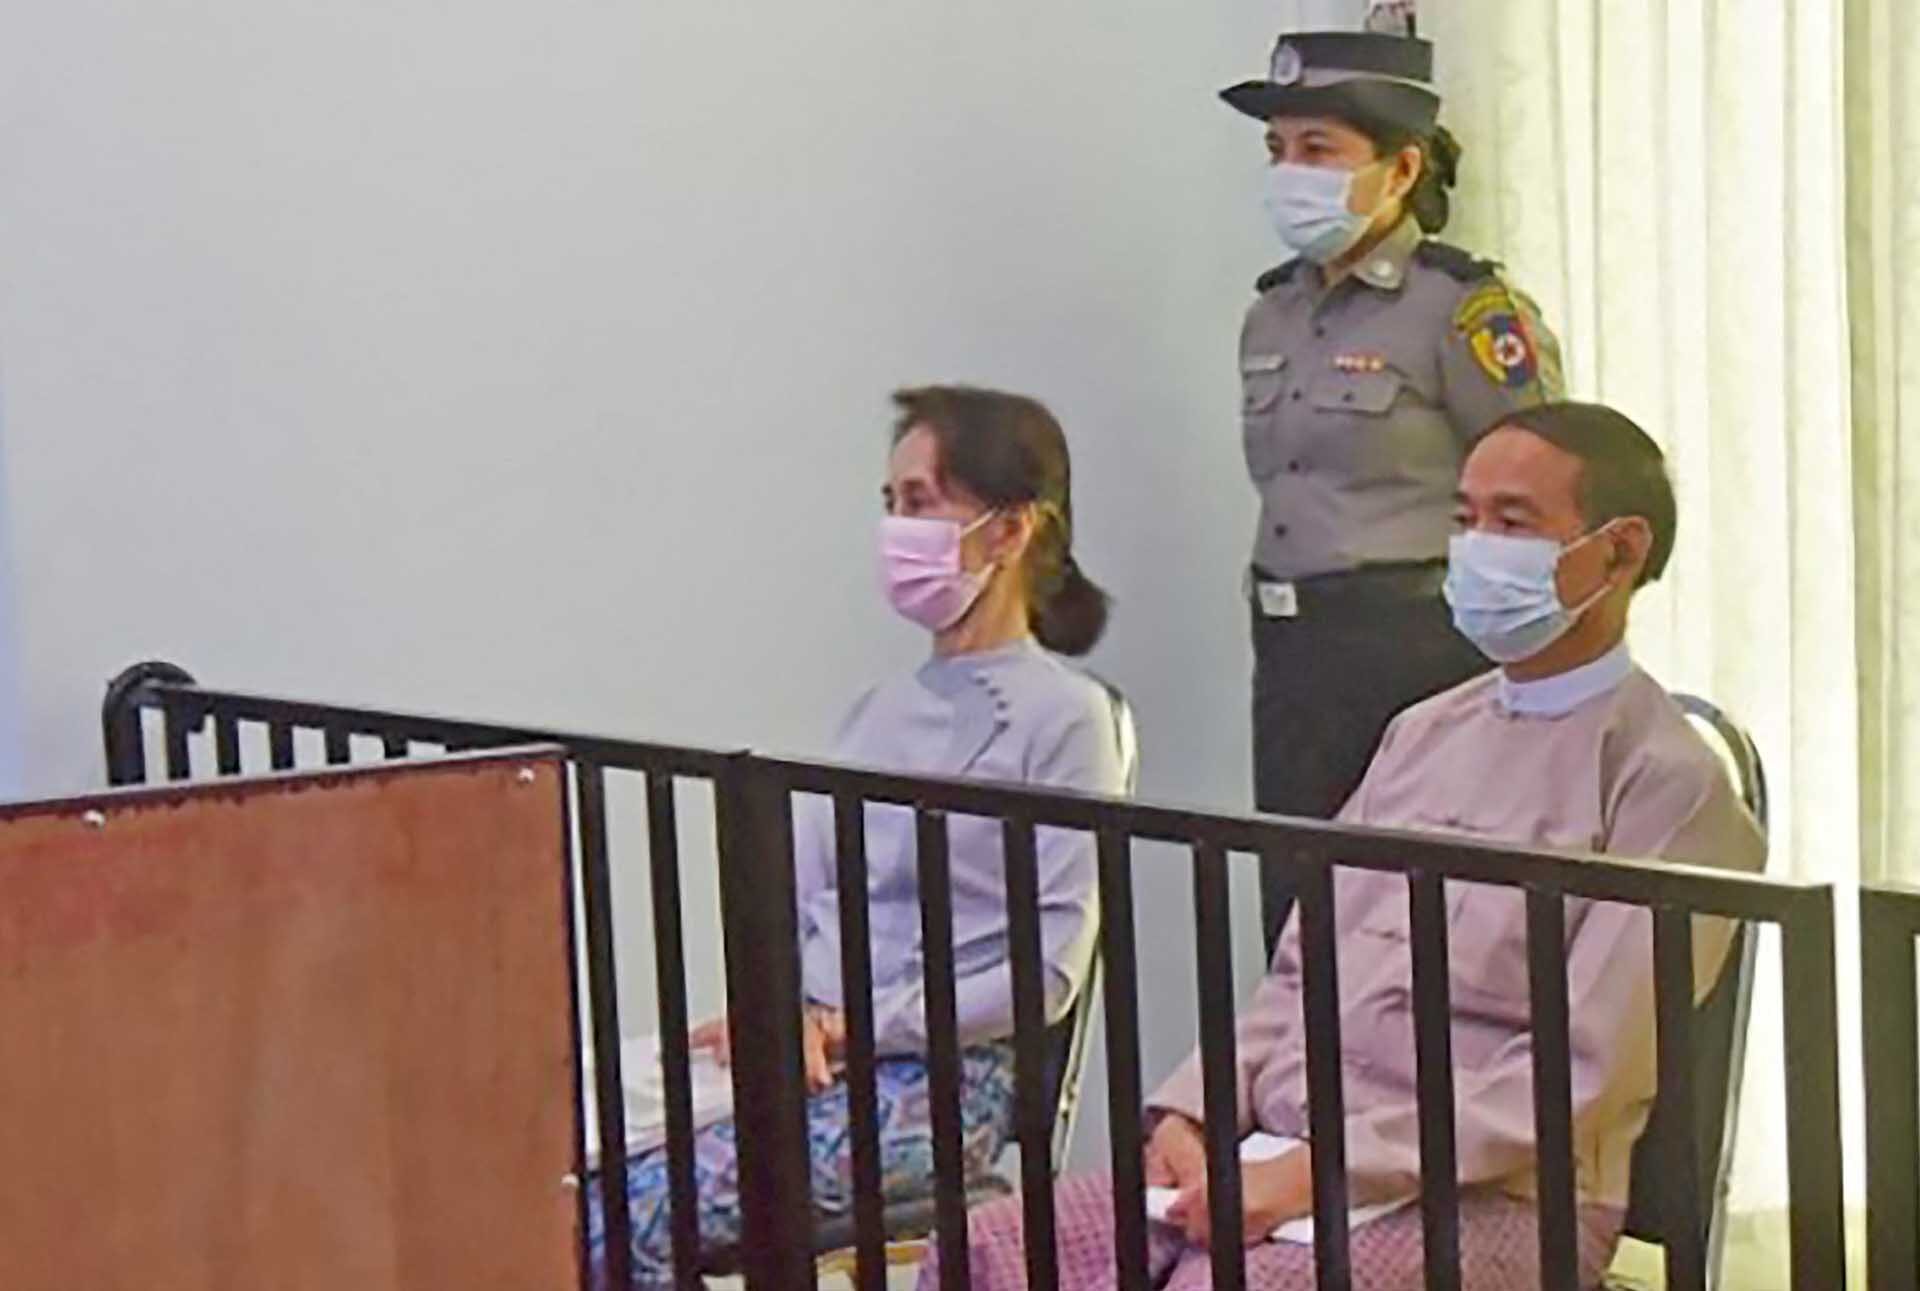 เมียนมาย้าย ออง ซาน ซู จี “คุมขังในบ้าน” แจงเป็นผู้สูงวัย-อยู่คุกเสี่ยงโรคลมแดด